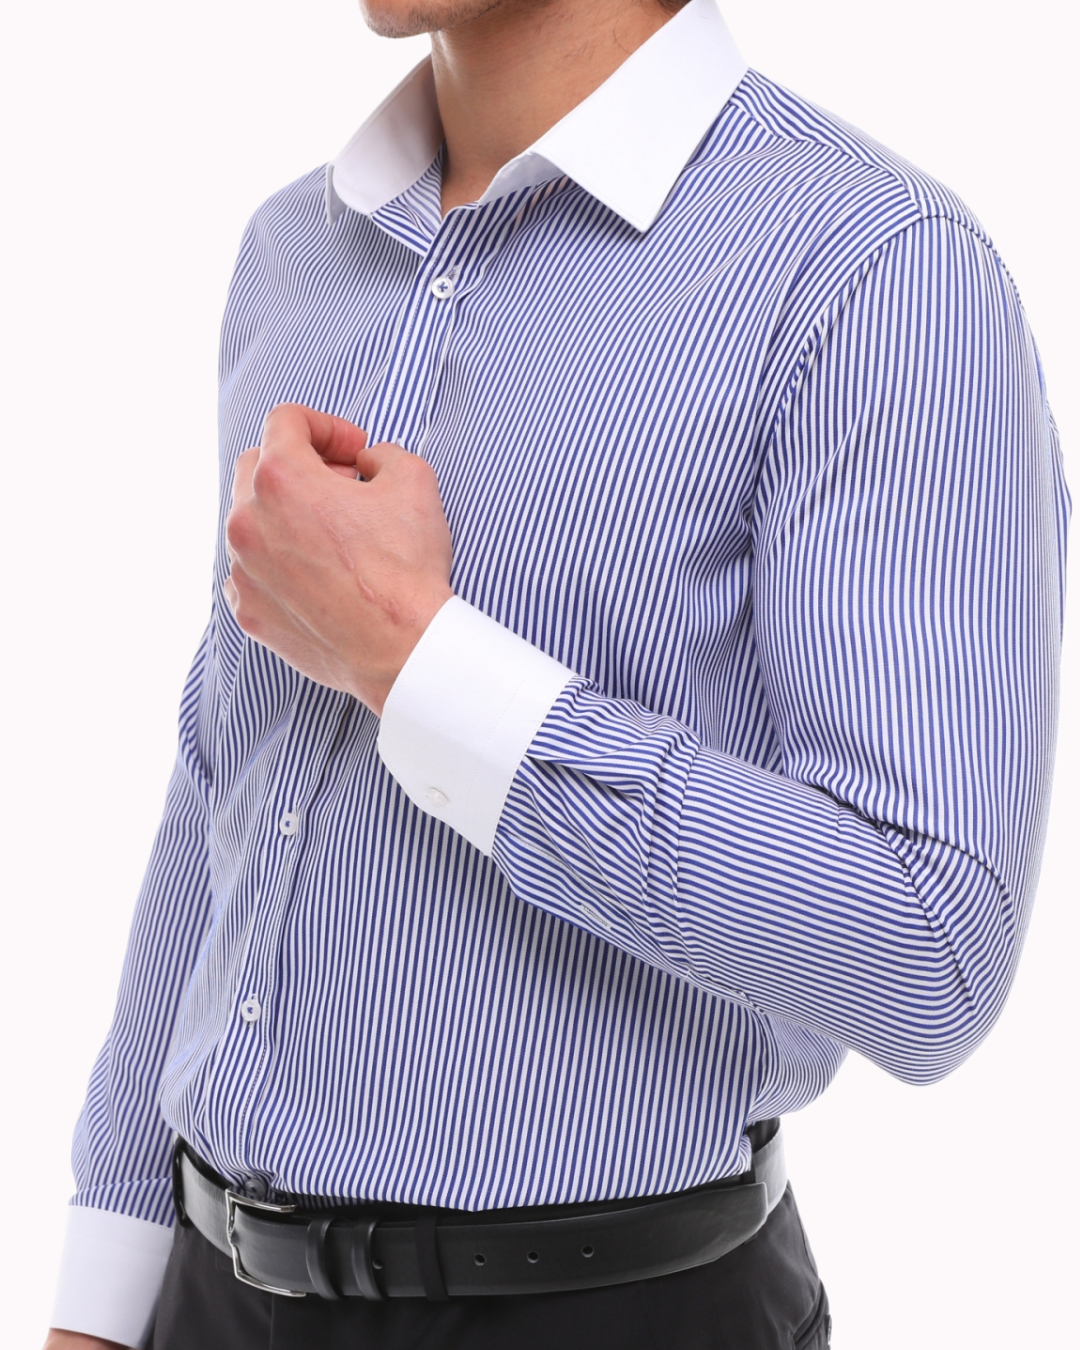 ecanyon – Blau-weiß - Bügeln mit Hemd weißem Kragen einfaches gestreiftes gestre